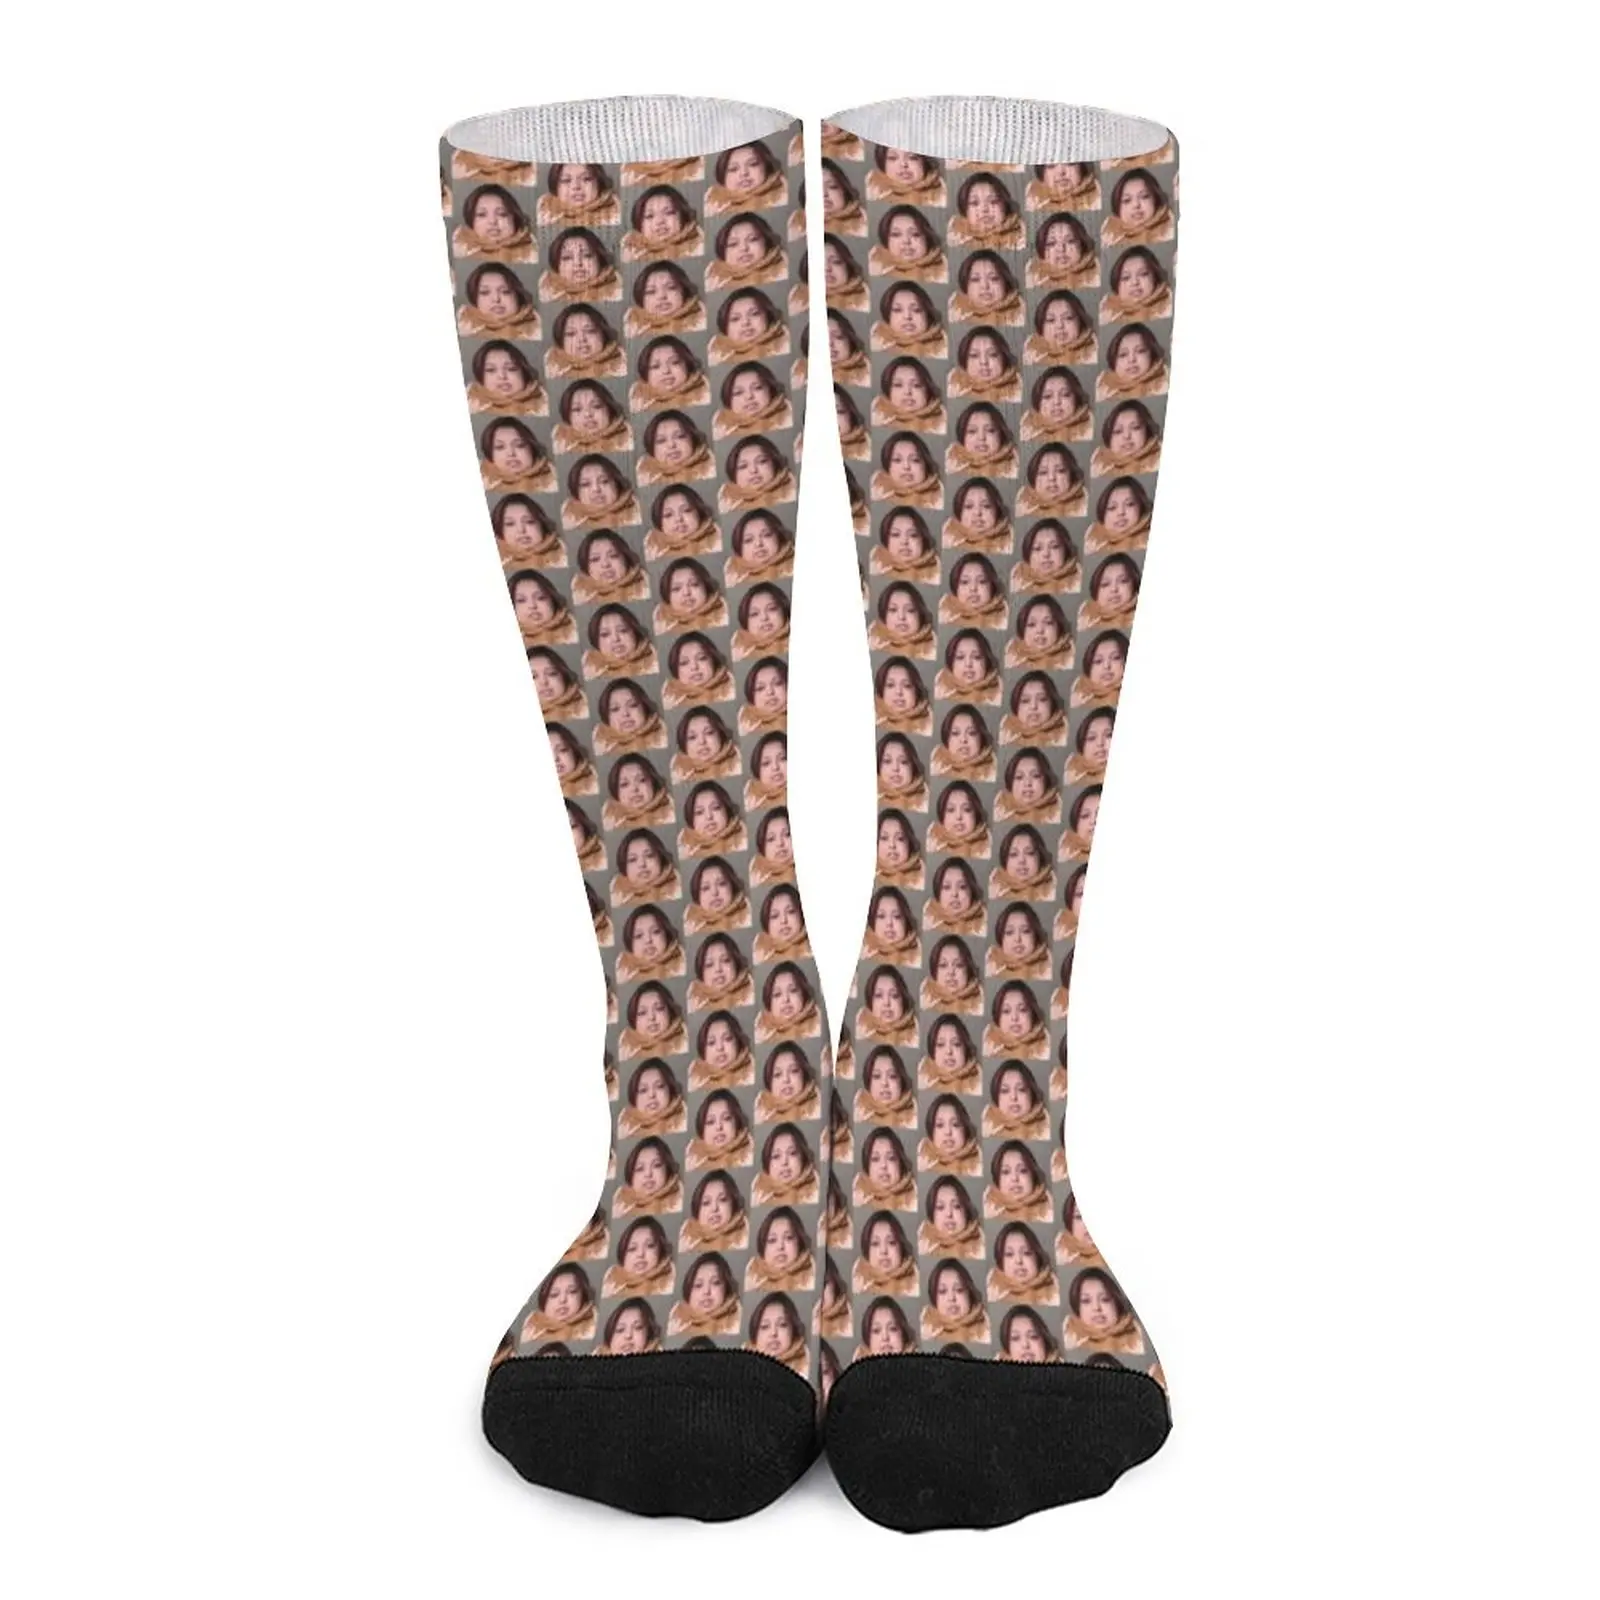 jasmine orlando Socks Socks set non-slip soccer socks Women's compression sock funny sock